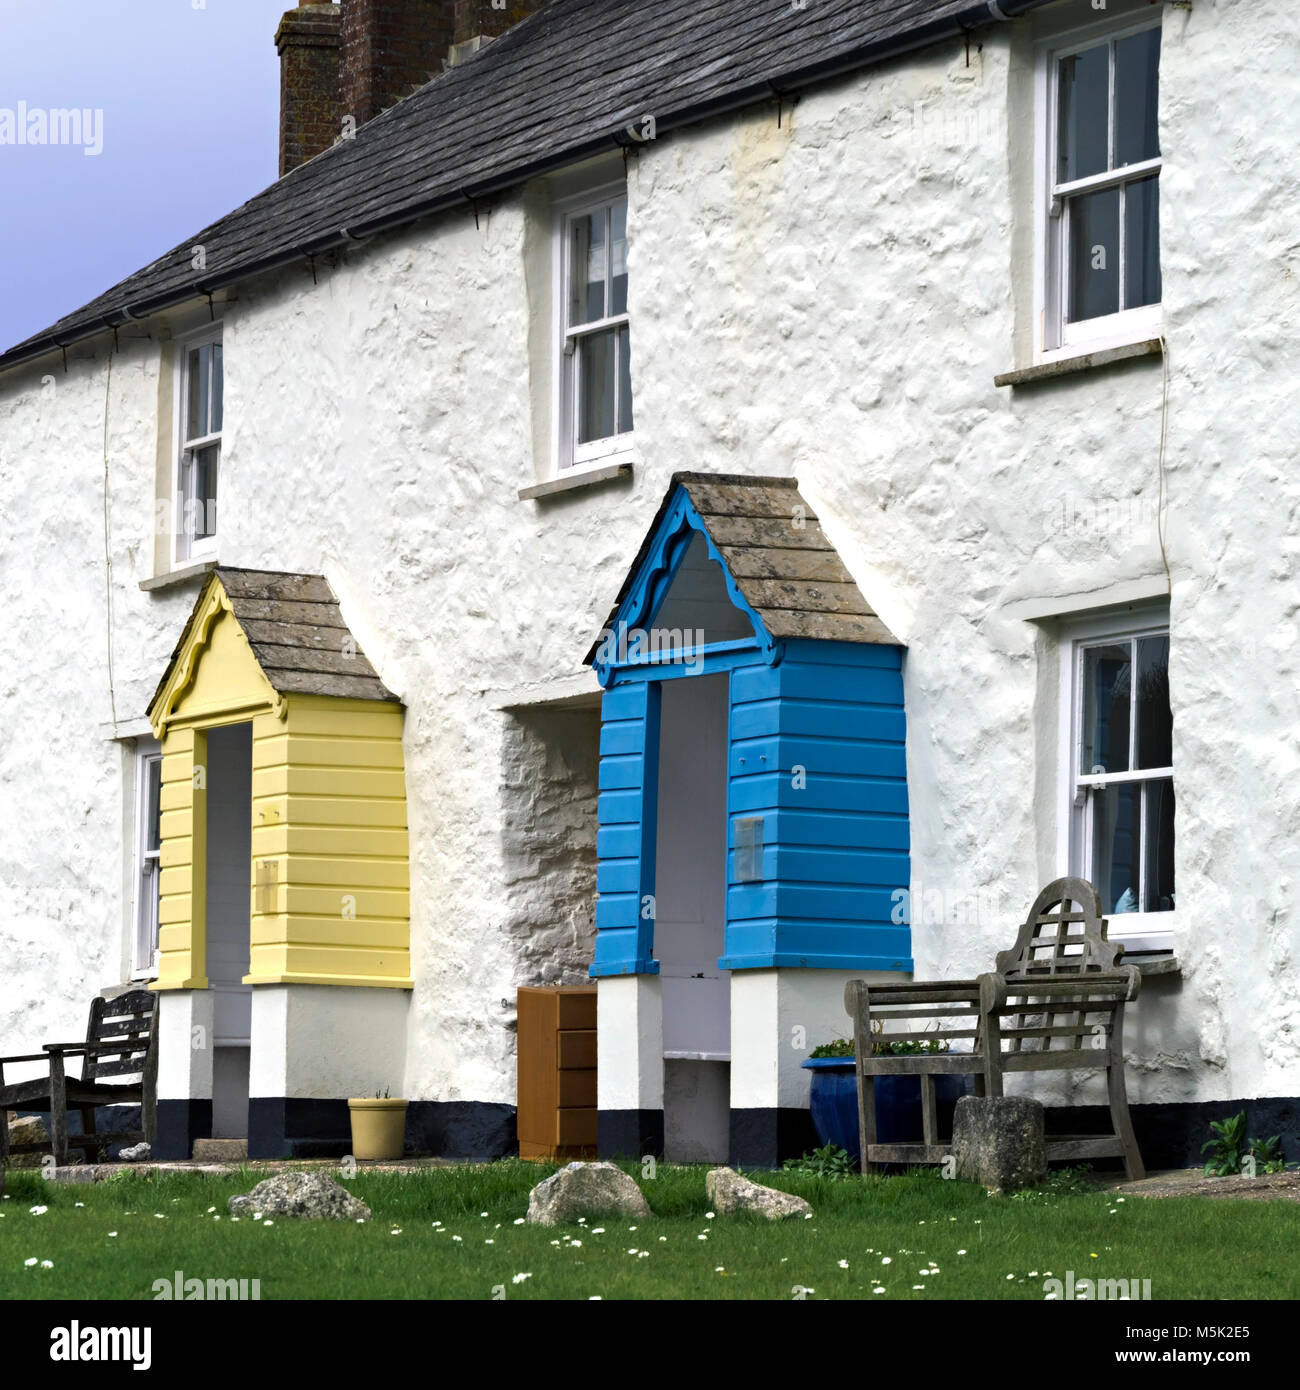 Alte Reihenhaus weiß getünchten harborside Cottages in Charlestown Hafen als Drehort für die BBC TV-Serie Poldark, Cornwall, England, Großbritannien Stockfoto